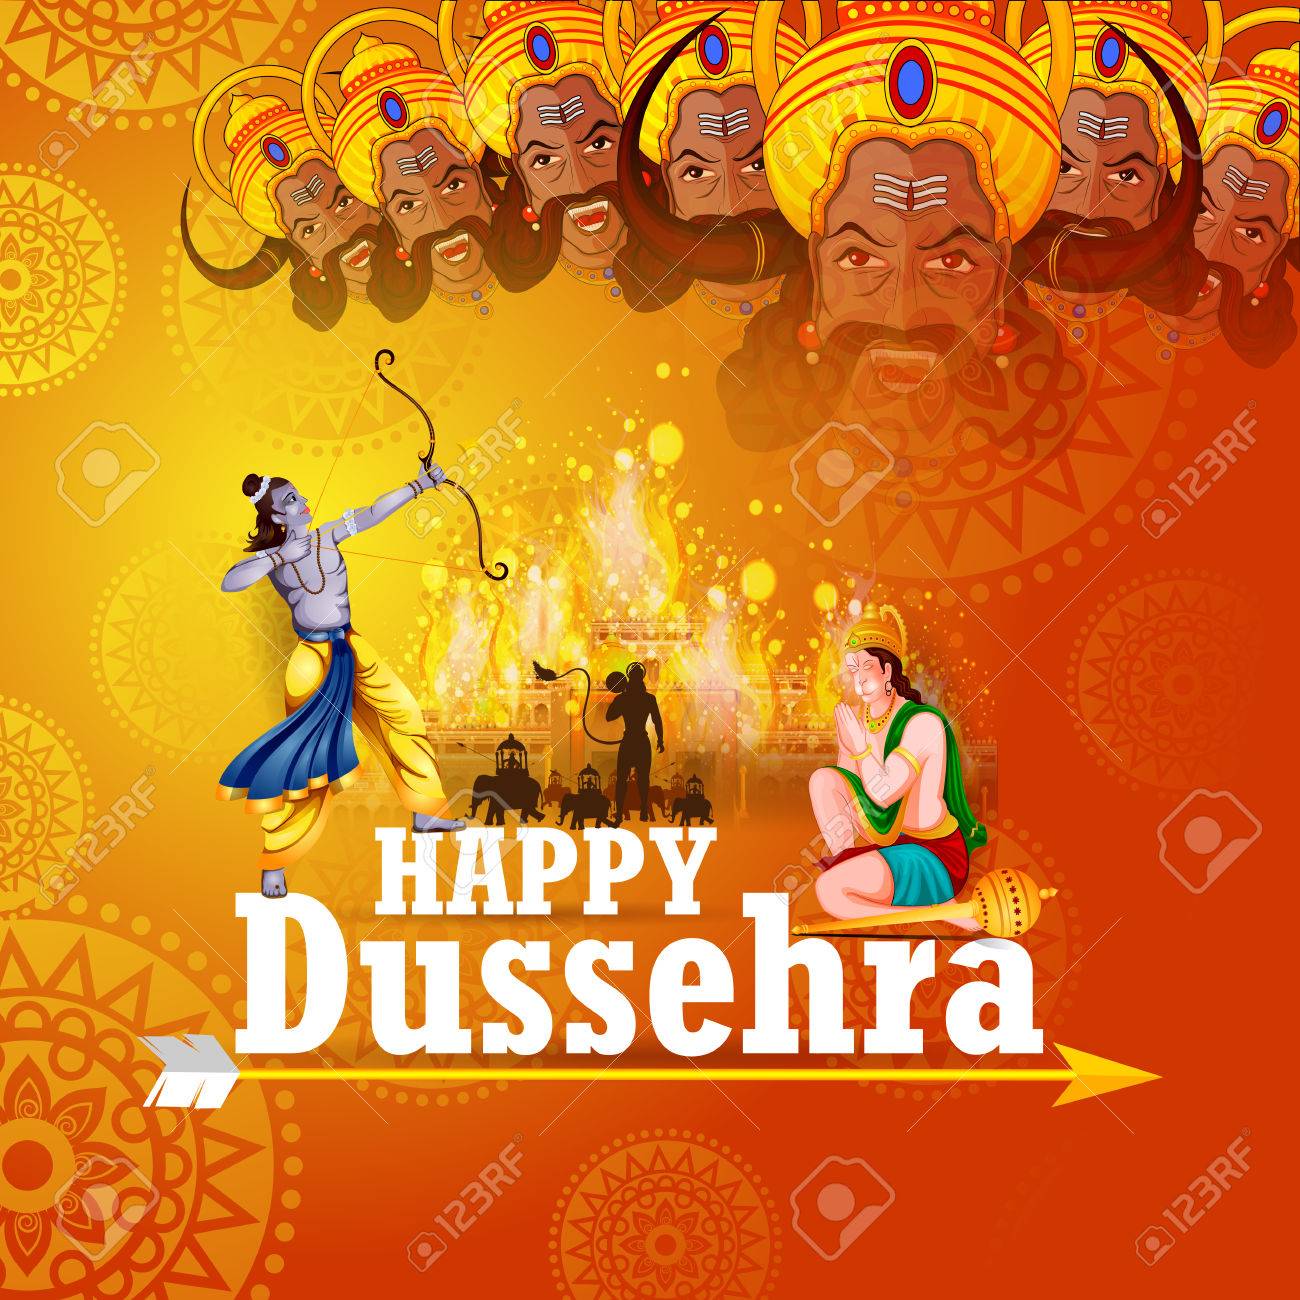 Happy Dussehra 2019 Images